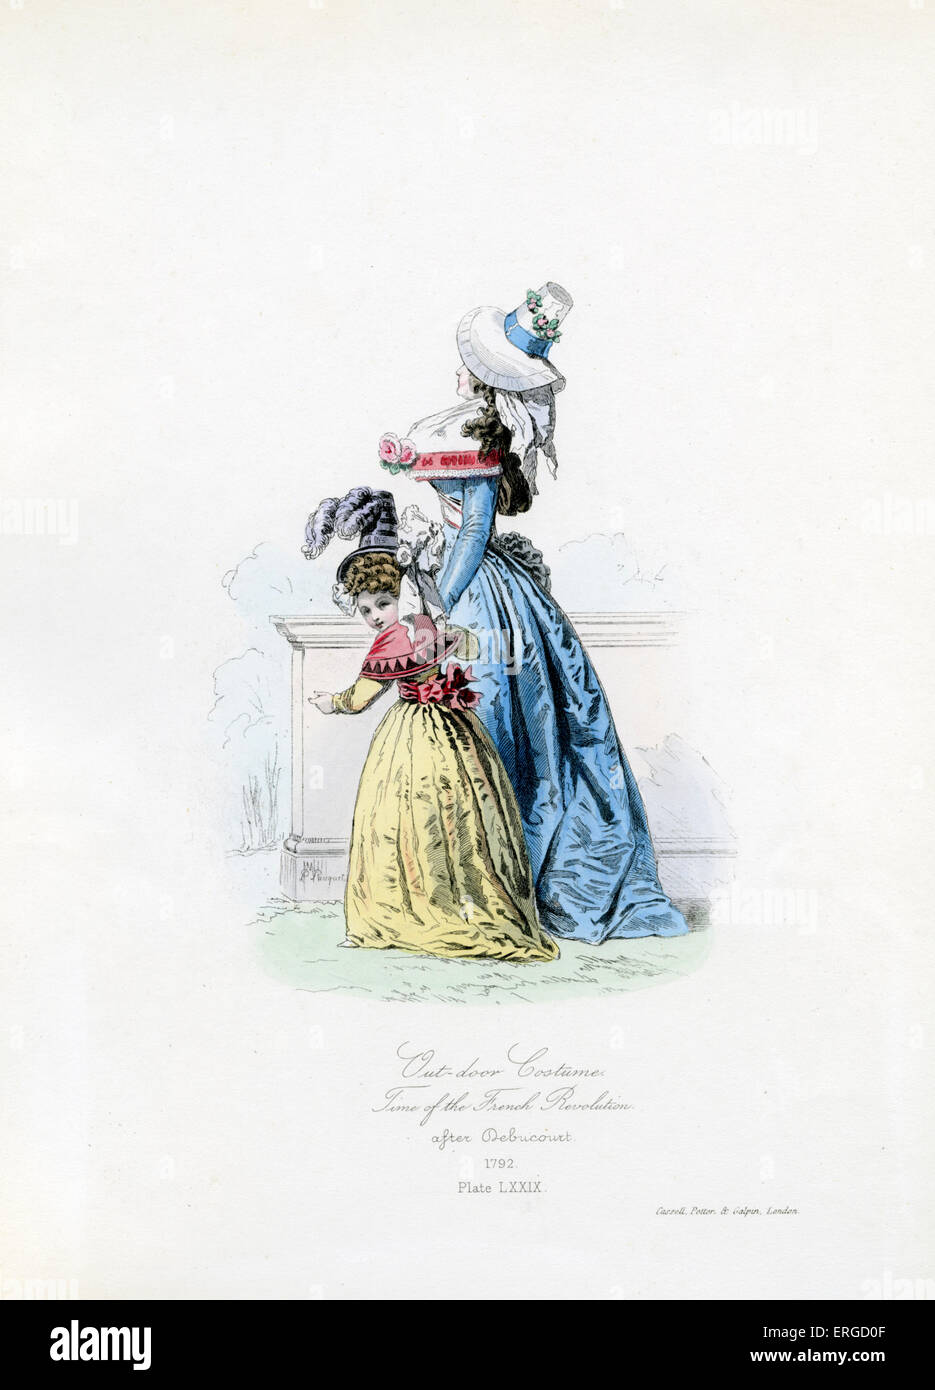 Outdoor-Kostüm während der französischen Revolution 1792 - vom Kupferstich von Polidor Pauquet nach Debucourt. Französische Revolution: Stockfoto